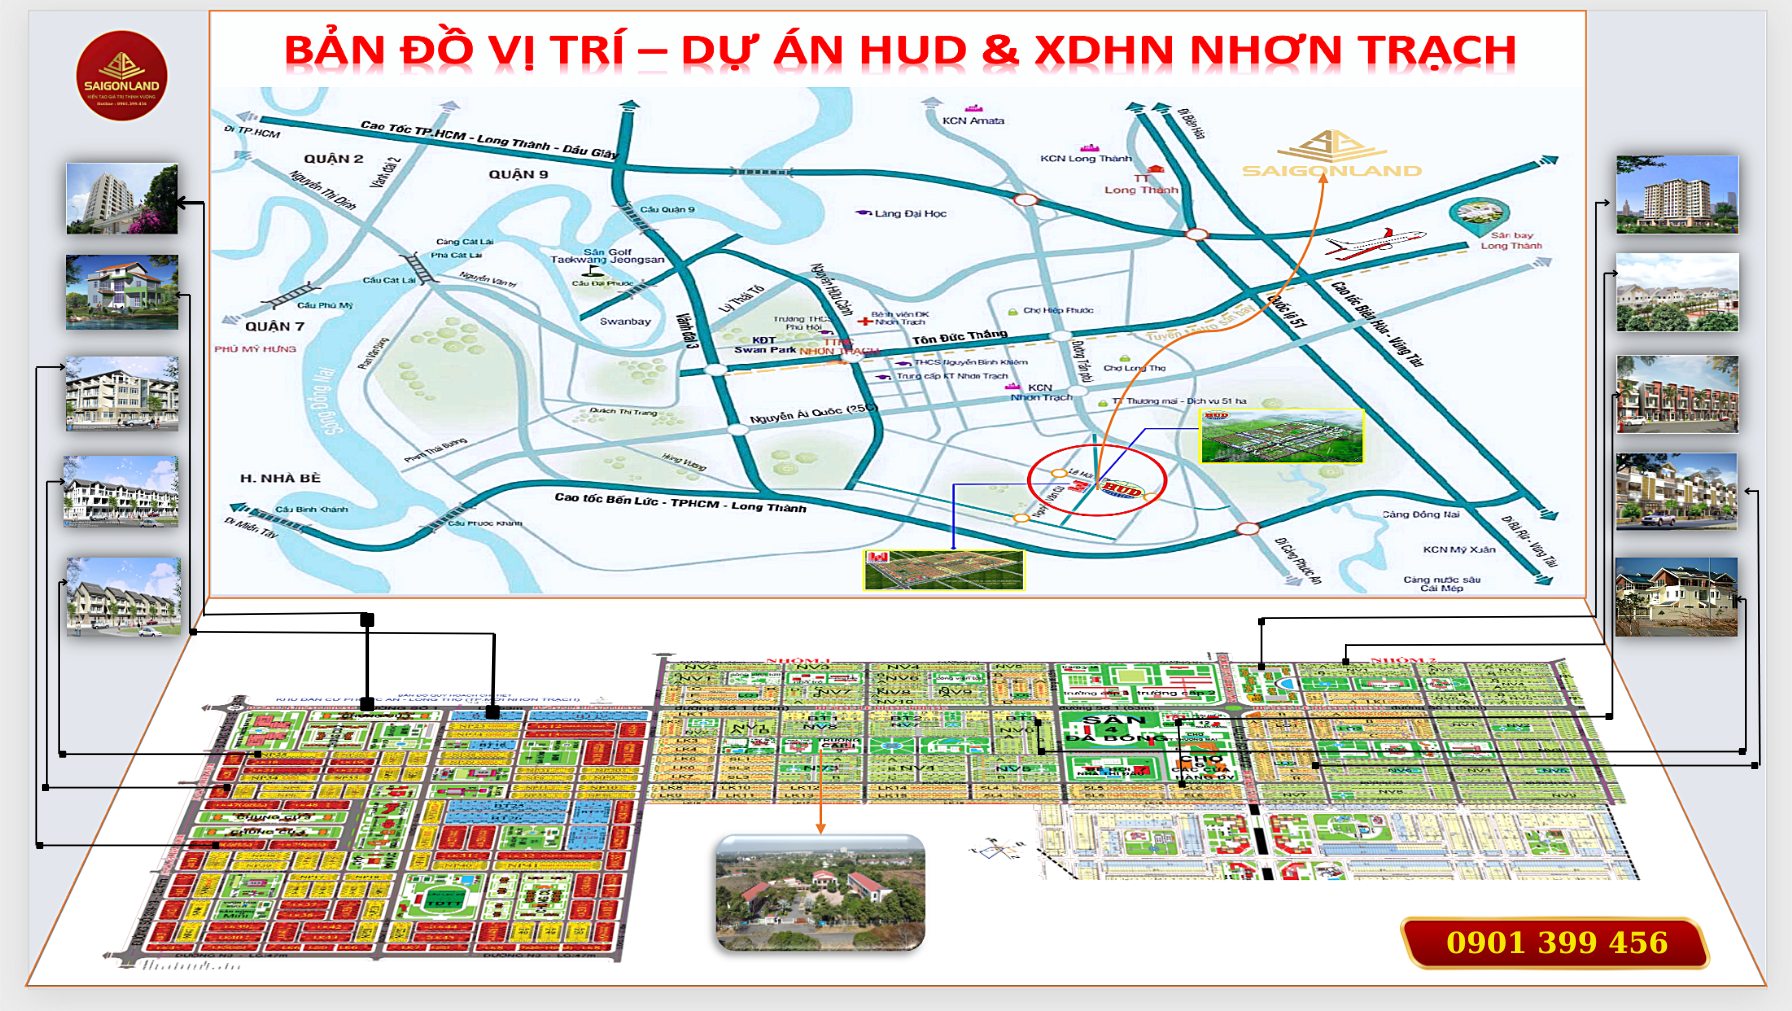 Saigonland Nhơn Trạch - Mua bán đất Dự án Hud Nhơn Trạch Đồng Nai và Khu đô thị mới Nhơn Trạch - Ảnh 3